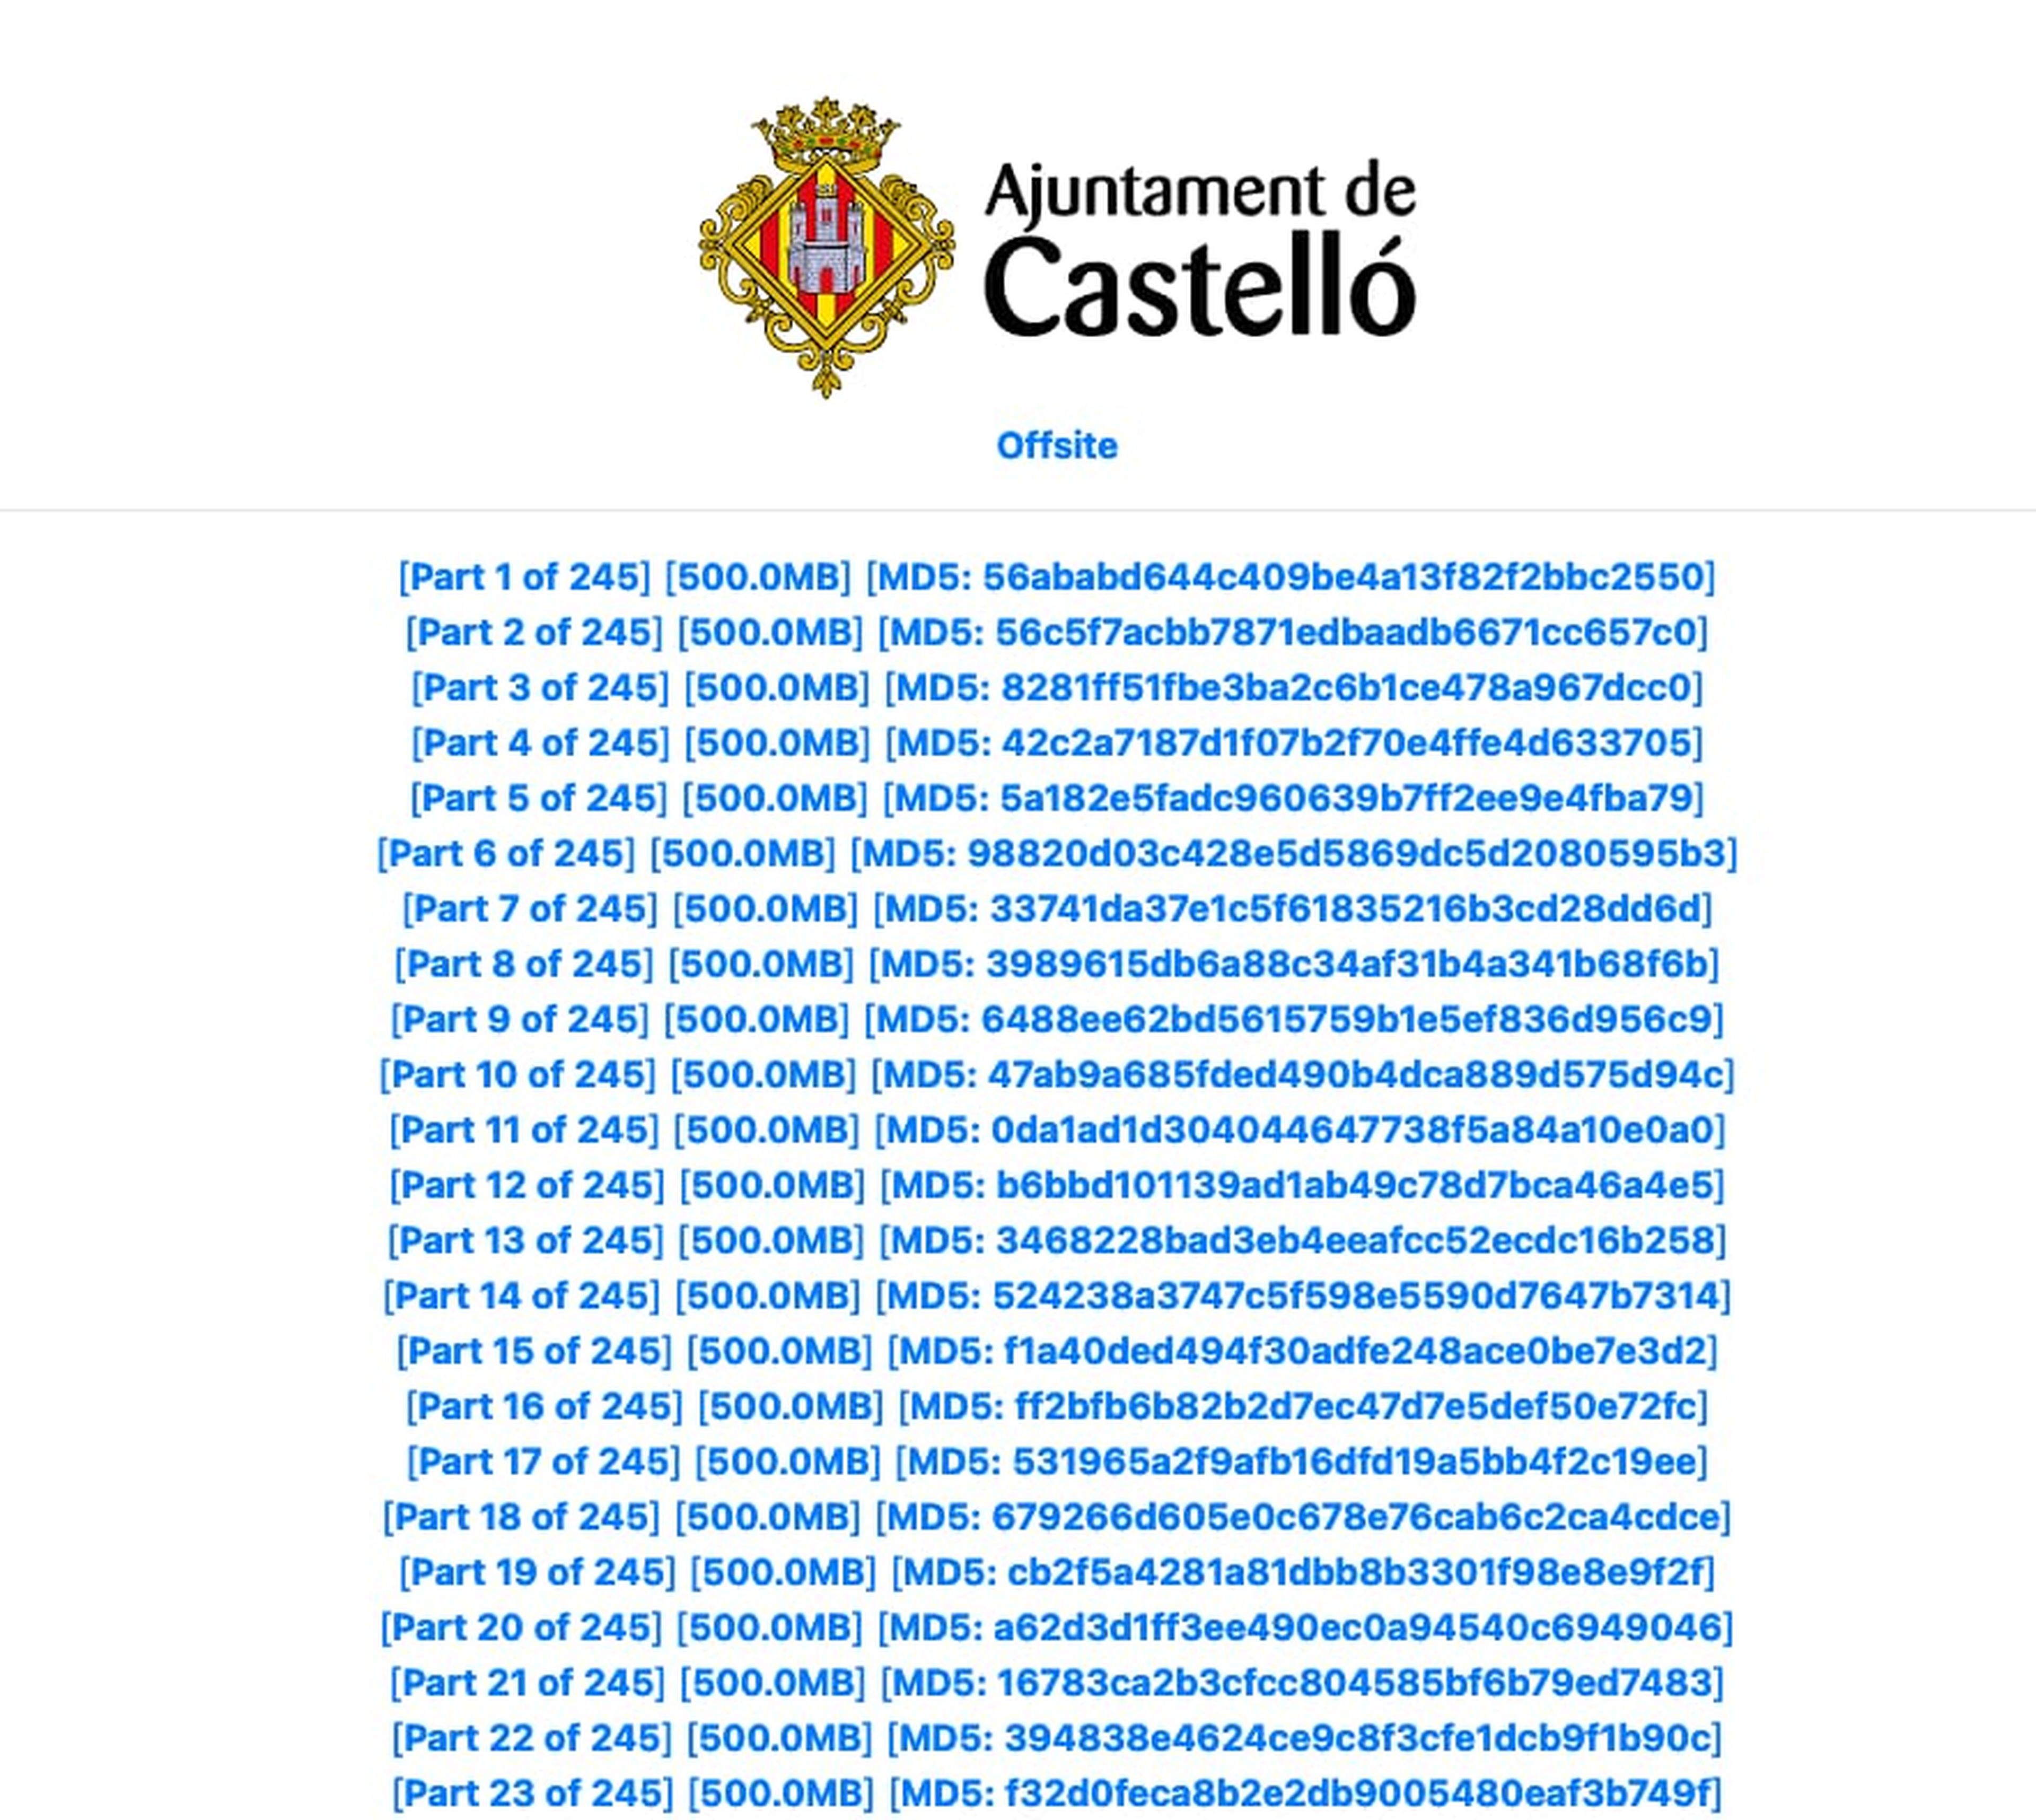 Pantallazo de la información filtrada del Ayuntamiento de Castellón.